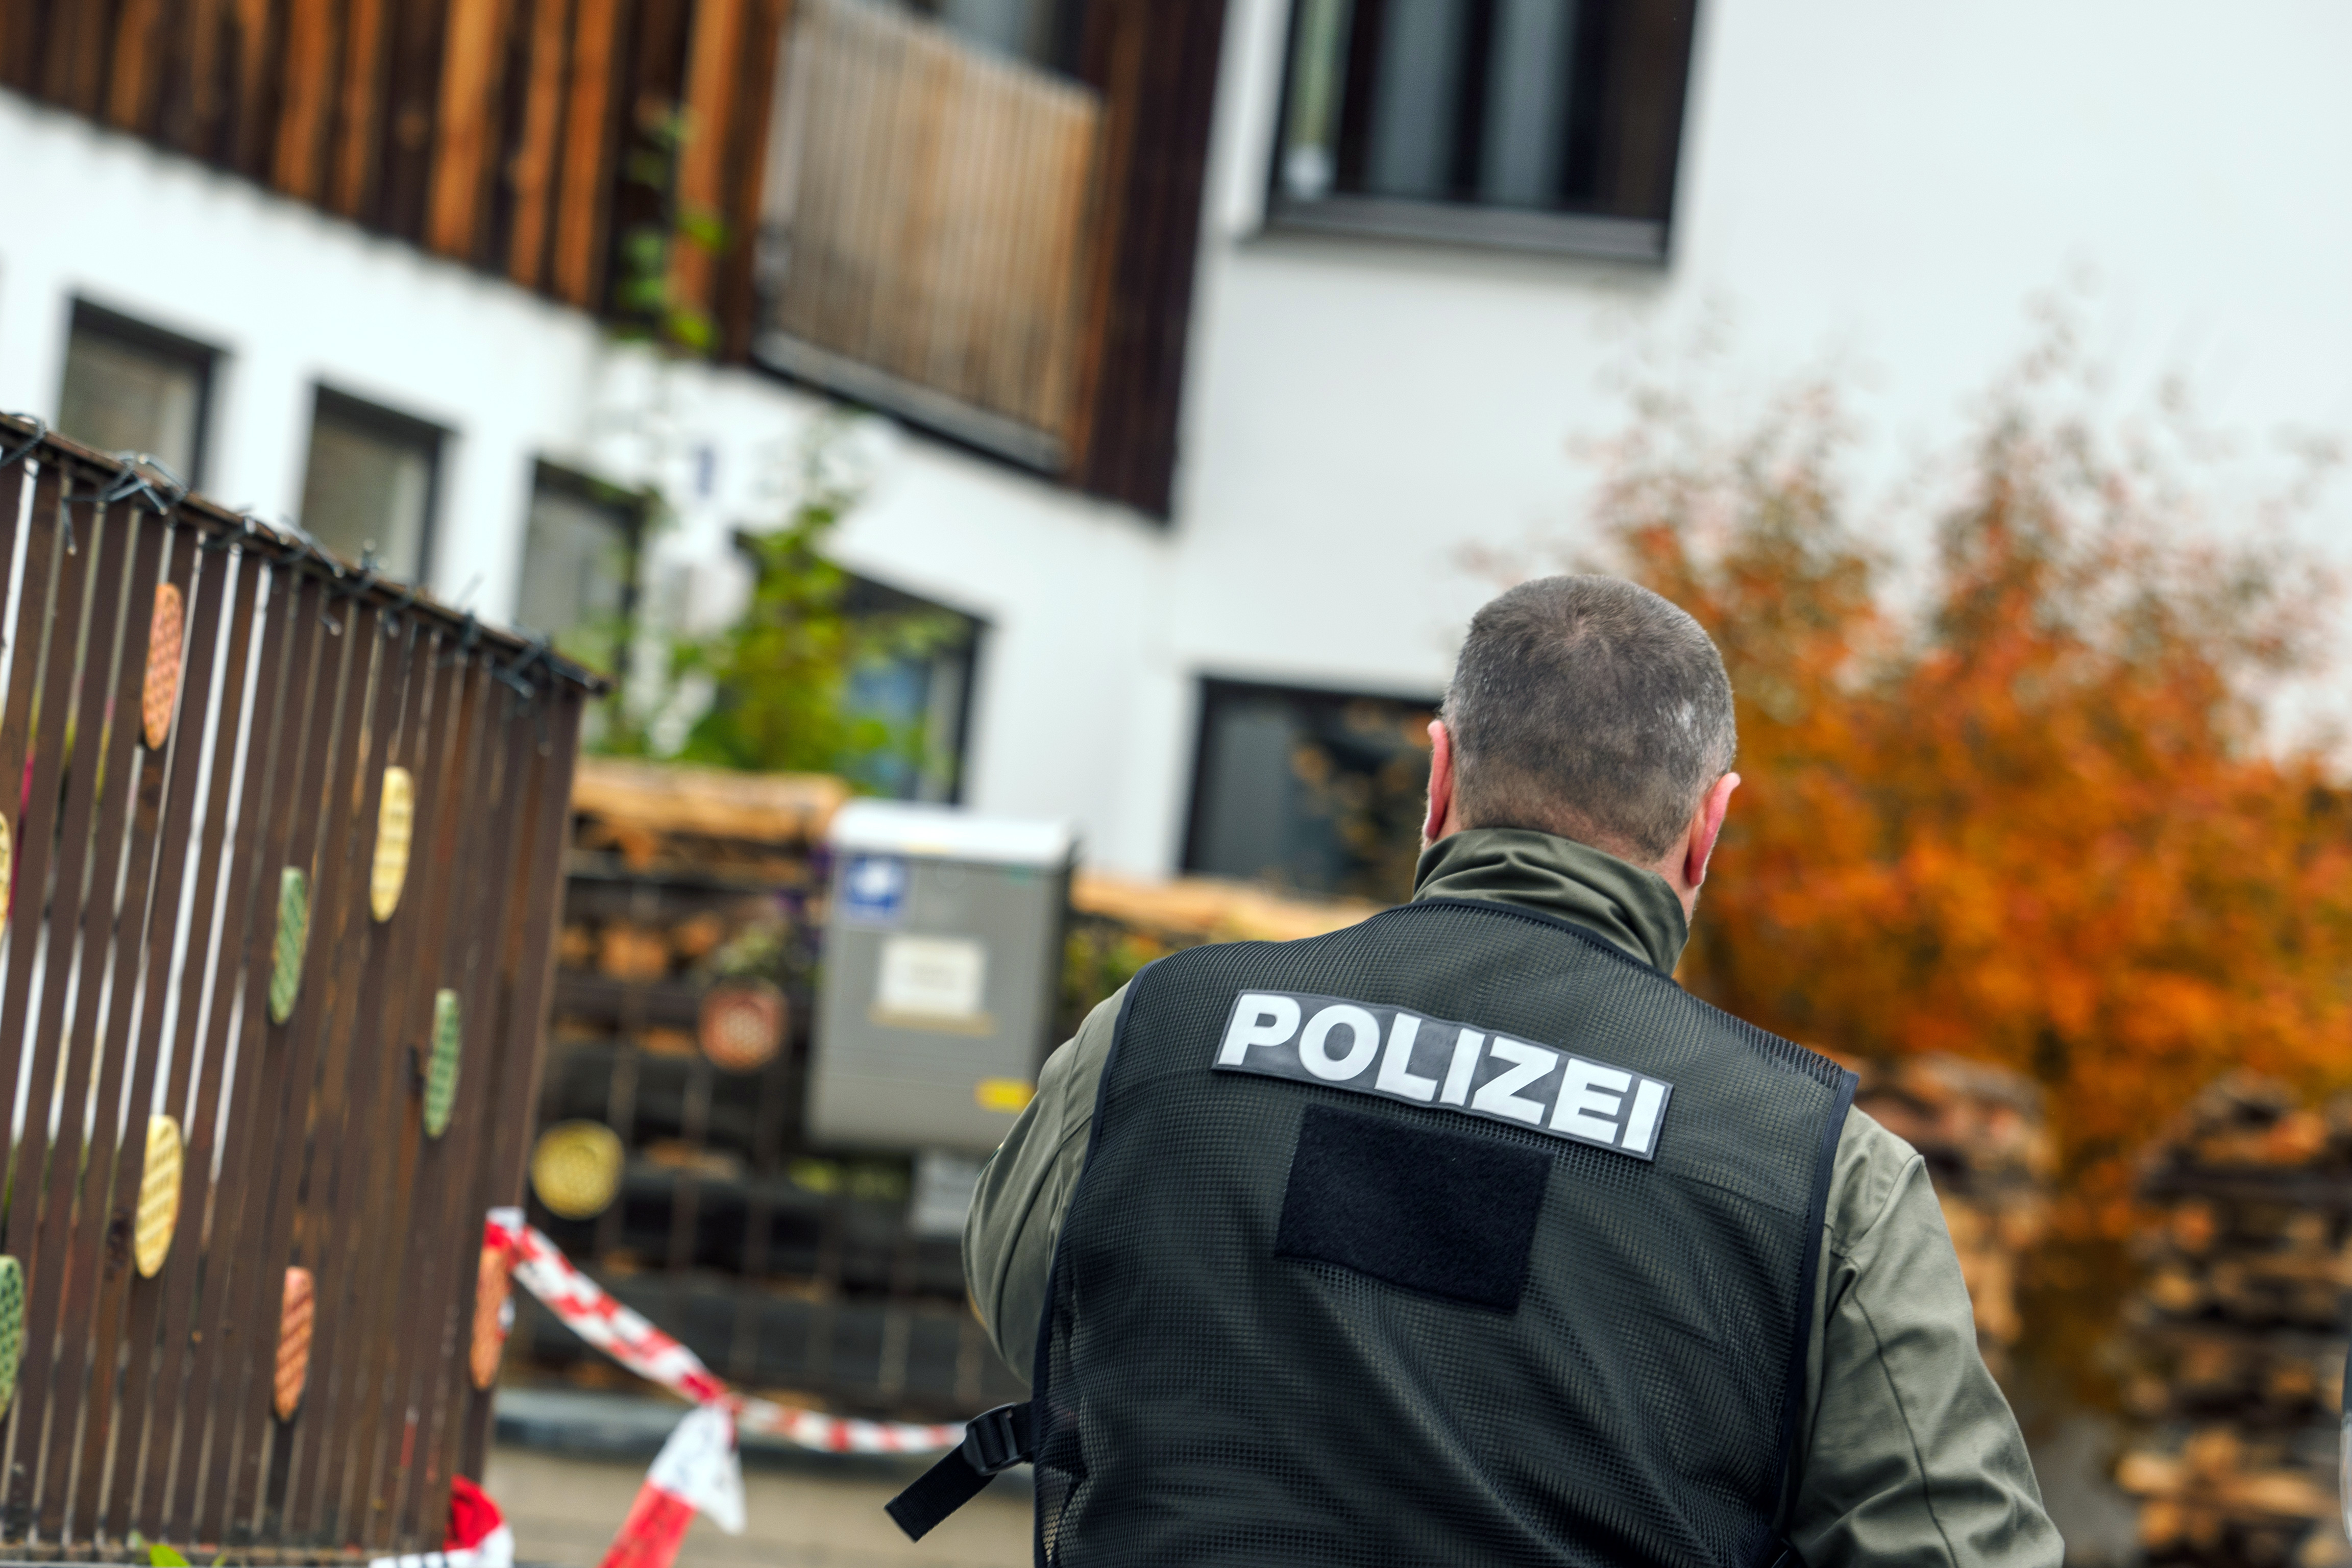 Mégsem halt bele sérüléseibe az egyik rendőr, akire egy szélsőjobboldali férfi lőtt rá Németországban